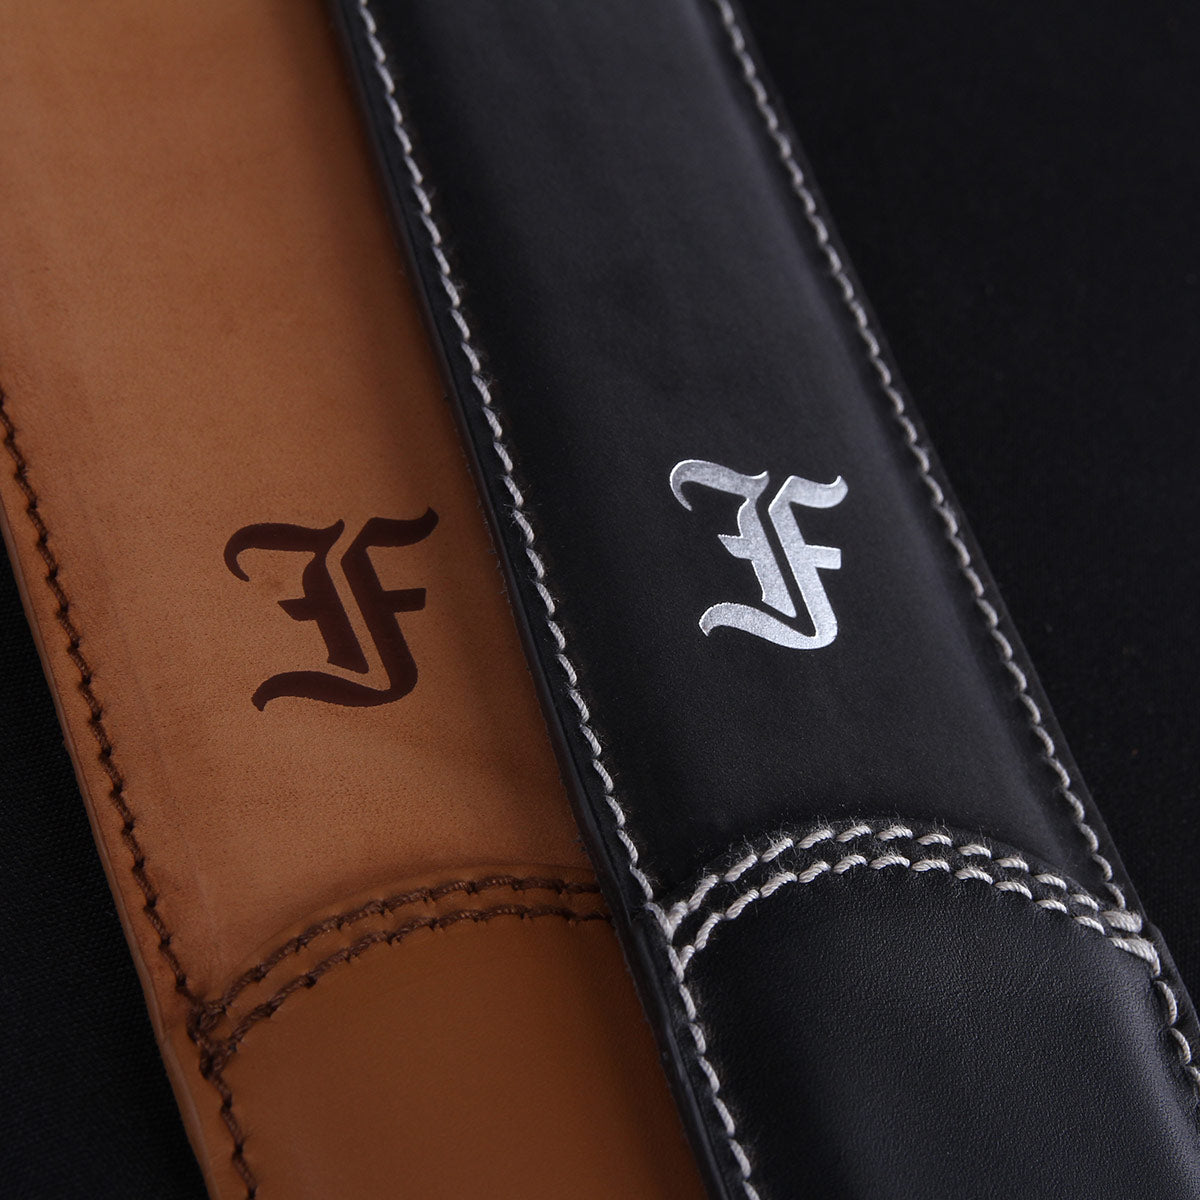 Premium leather strap